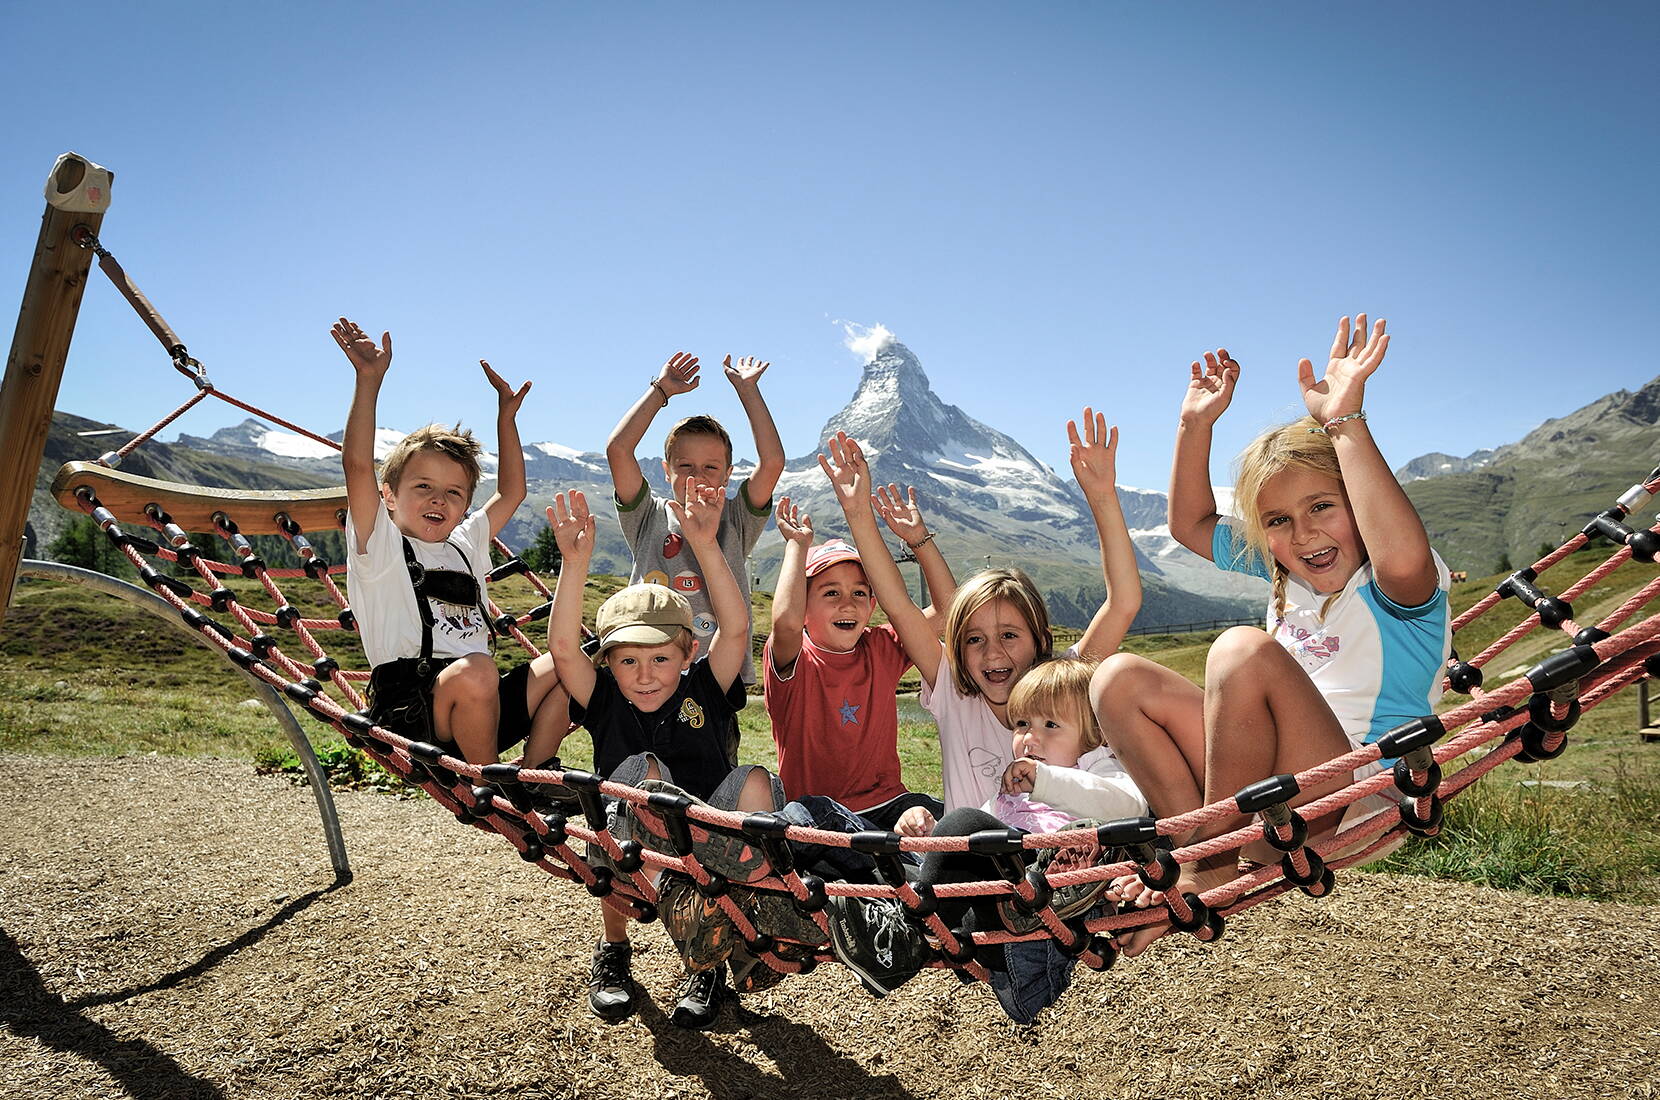 Familienausflug. Matterhorn summer paradise. Wenn Familien in Zermatt Ferien machen, ist eines ganz klar: zum Leisee, da muss man einfach hin!